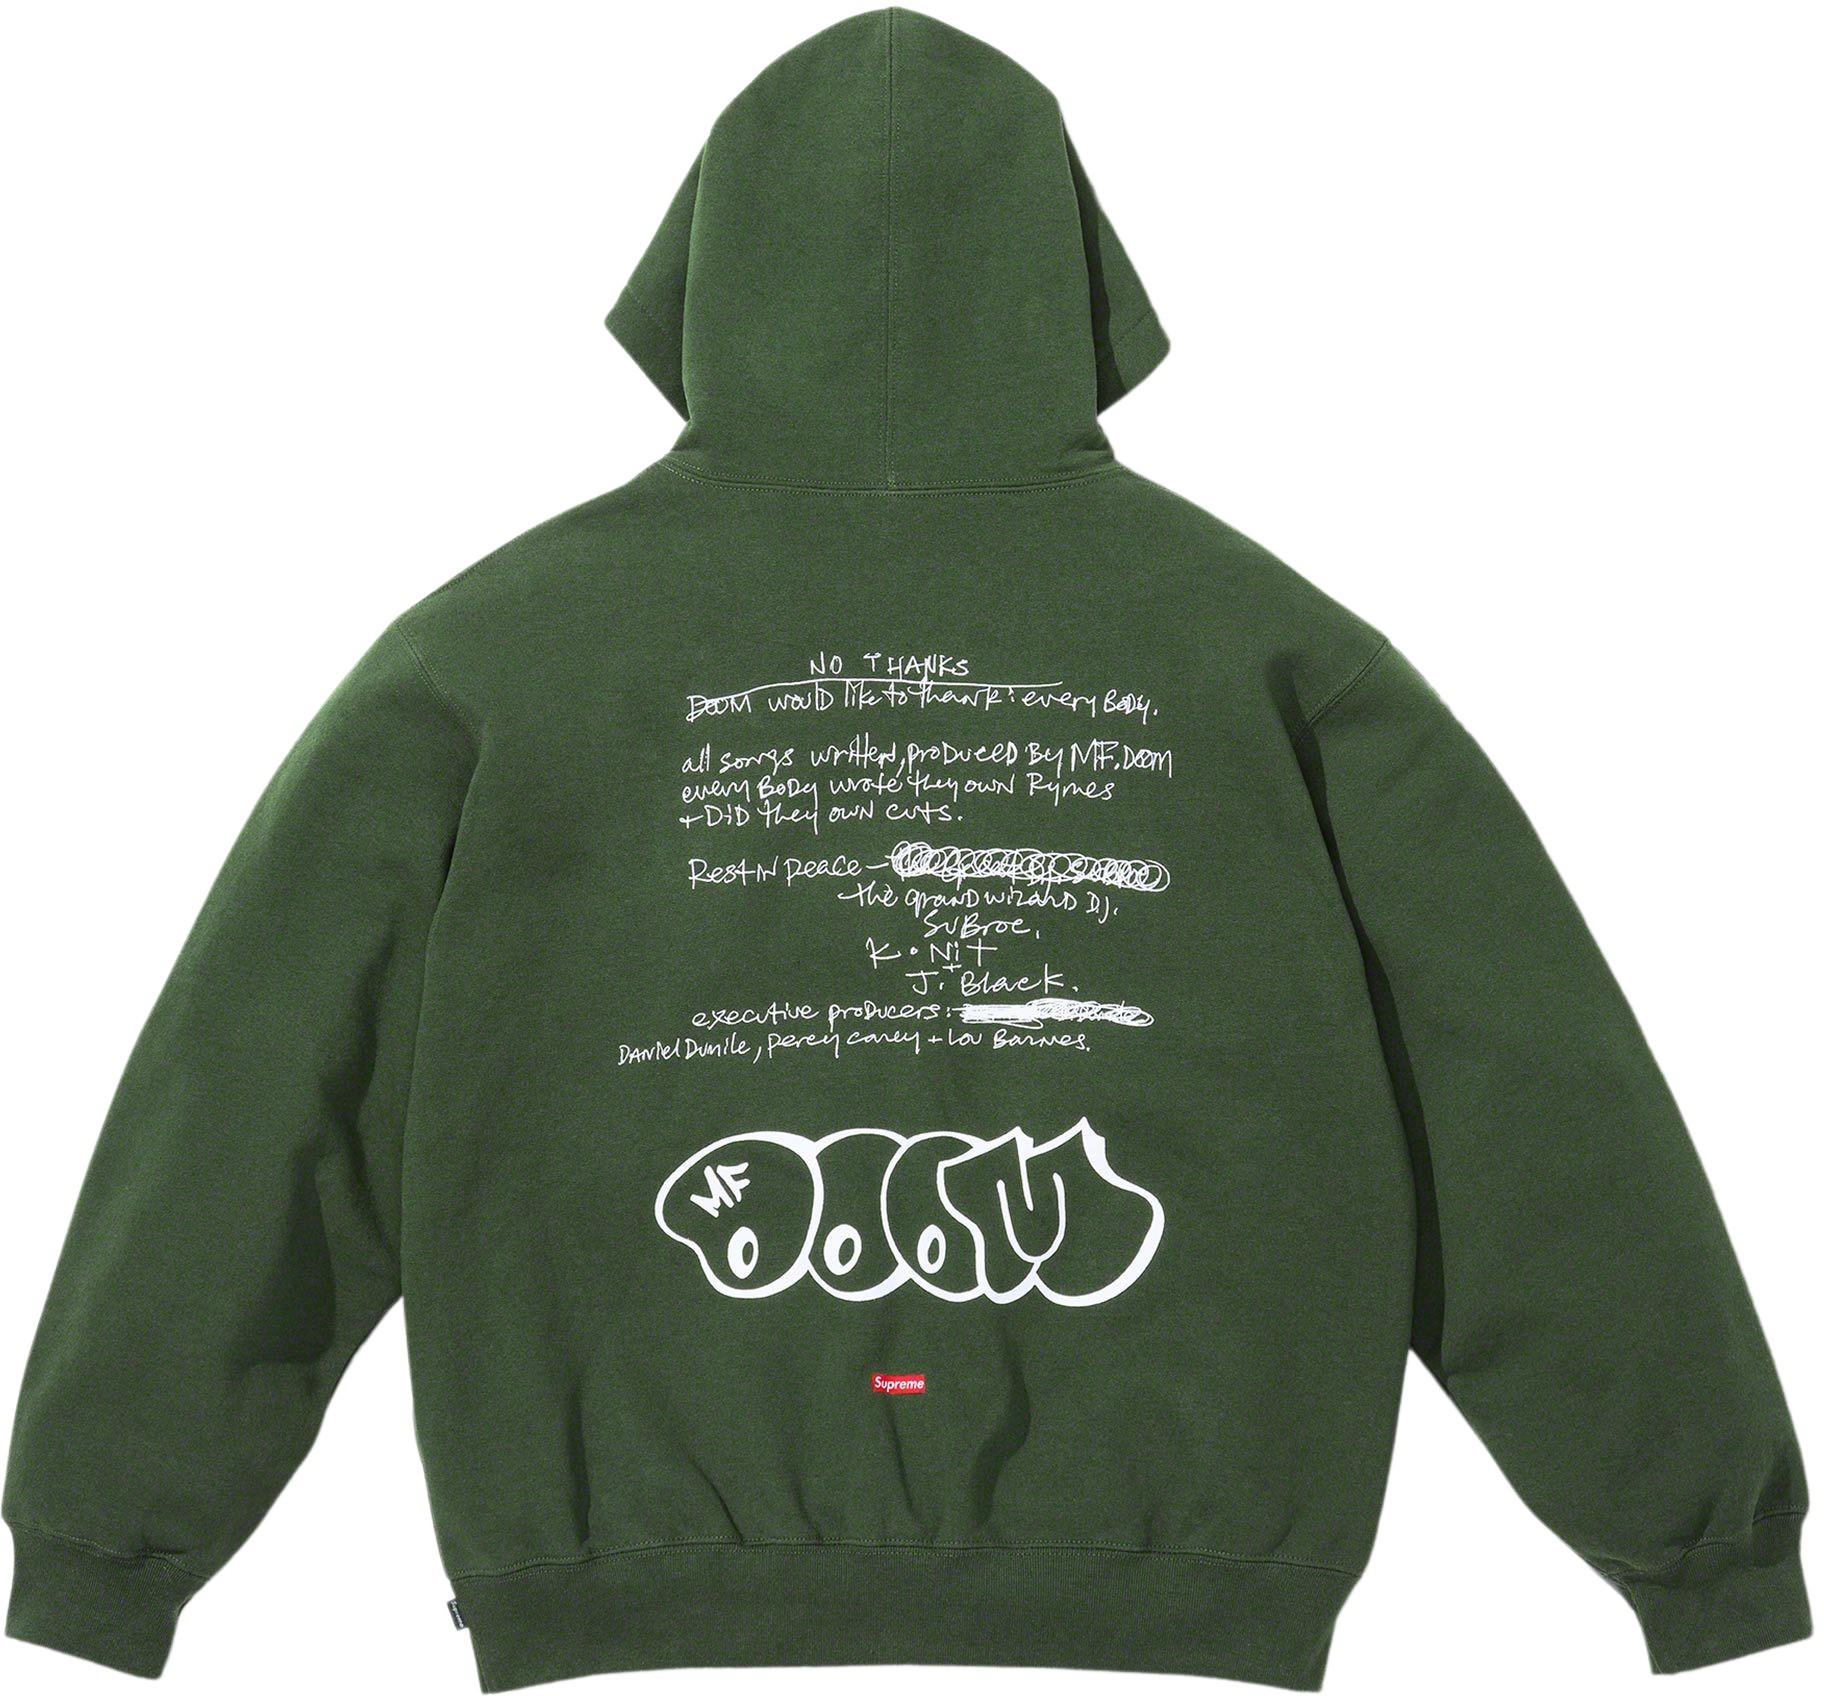 14,070円Supreme Mf Doom Hooded Sweatshirt L size